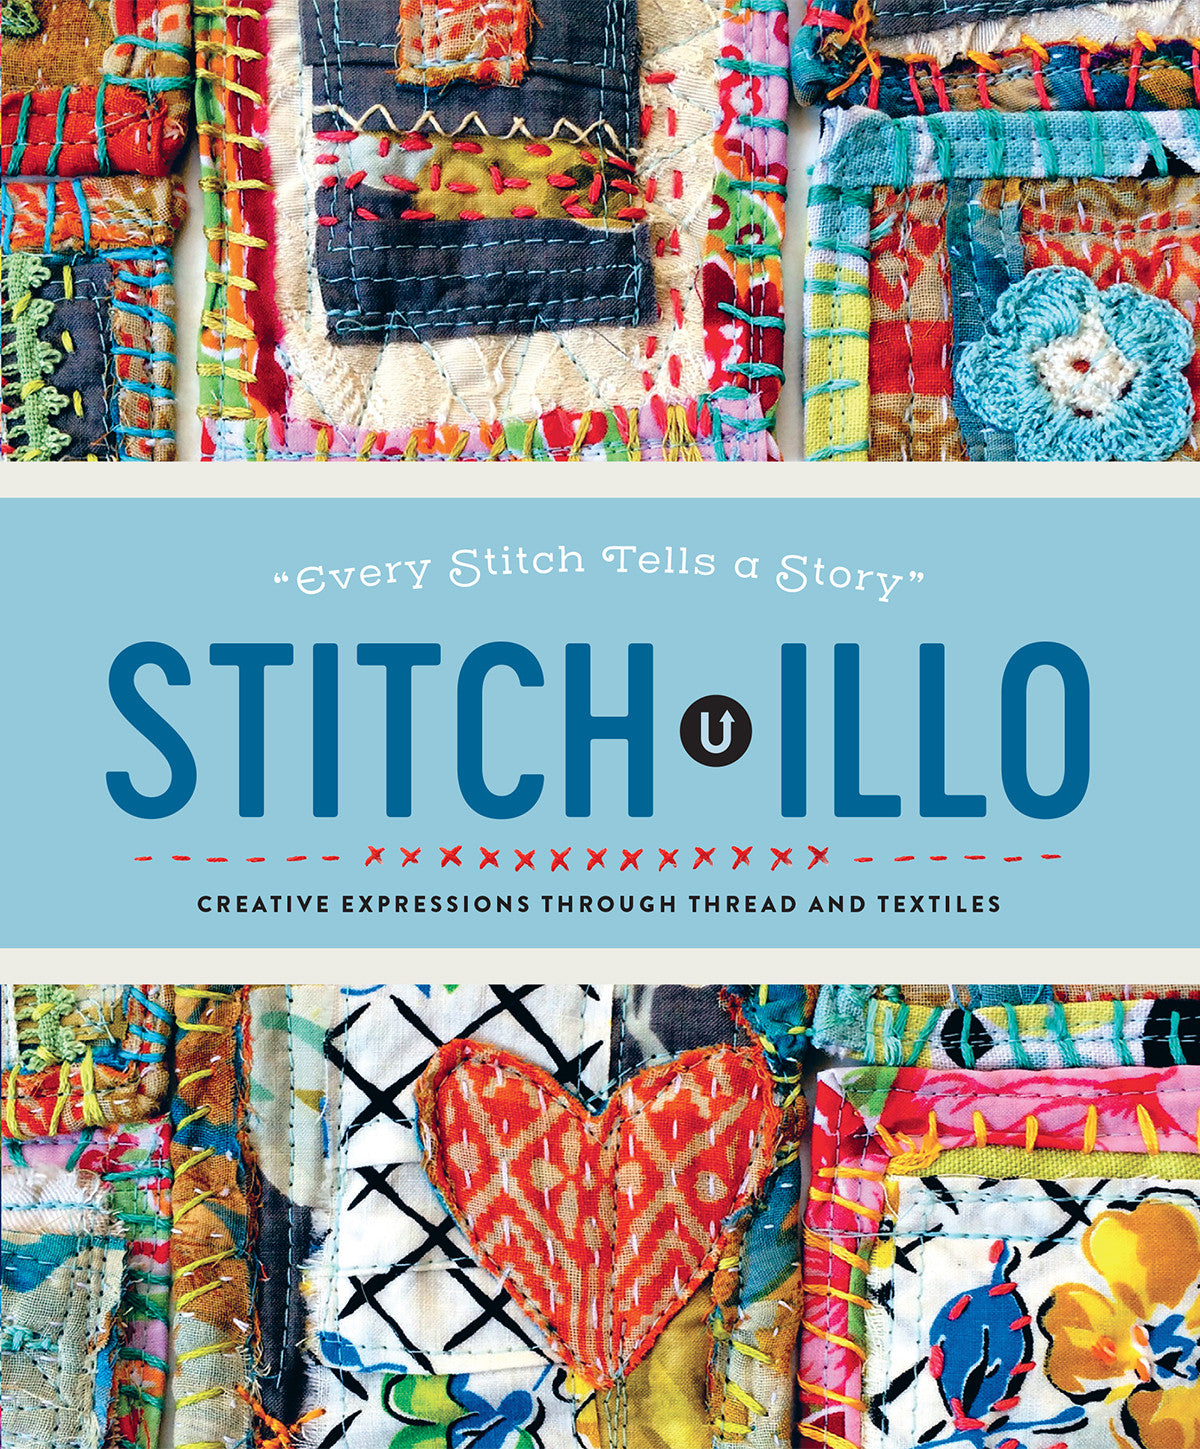 Stitch•illo (reprint)